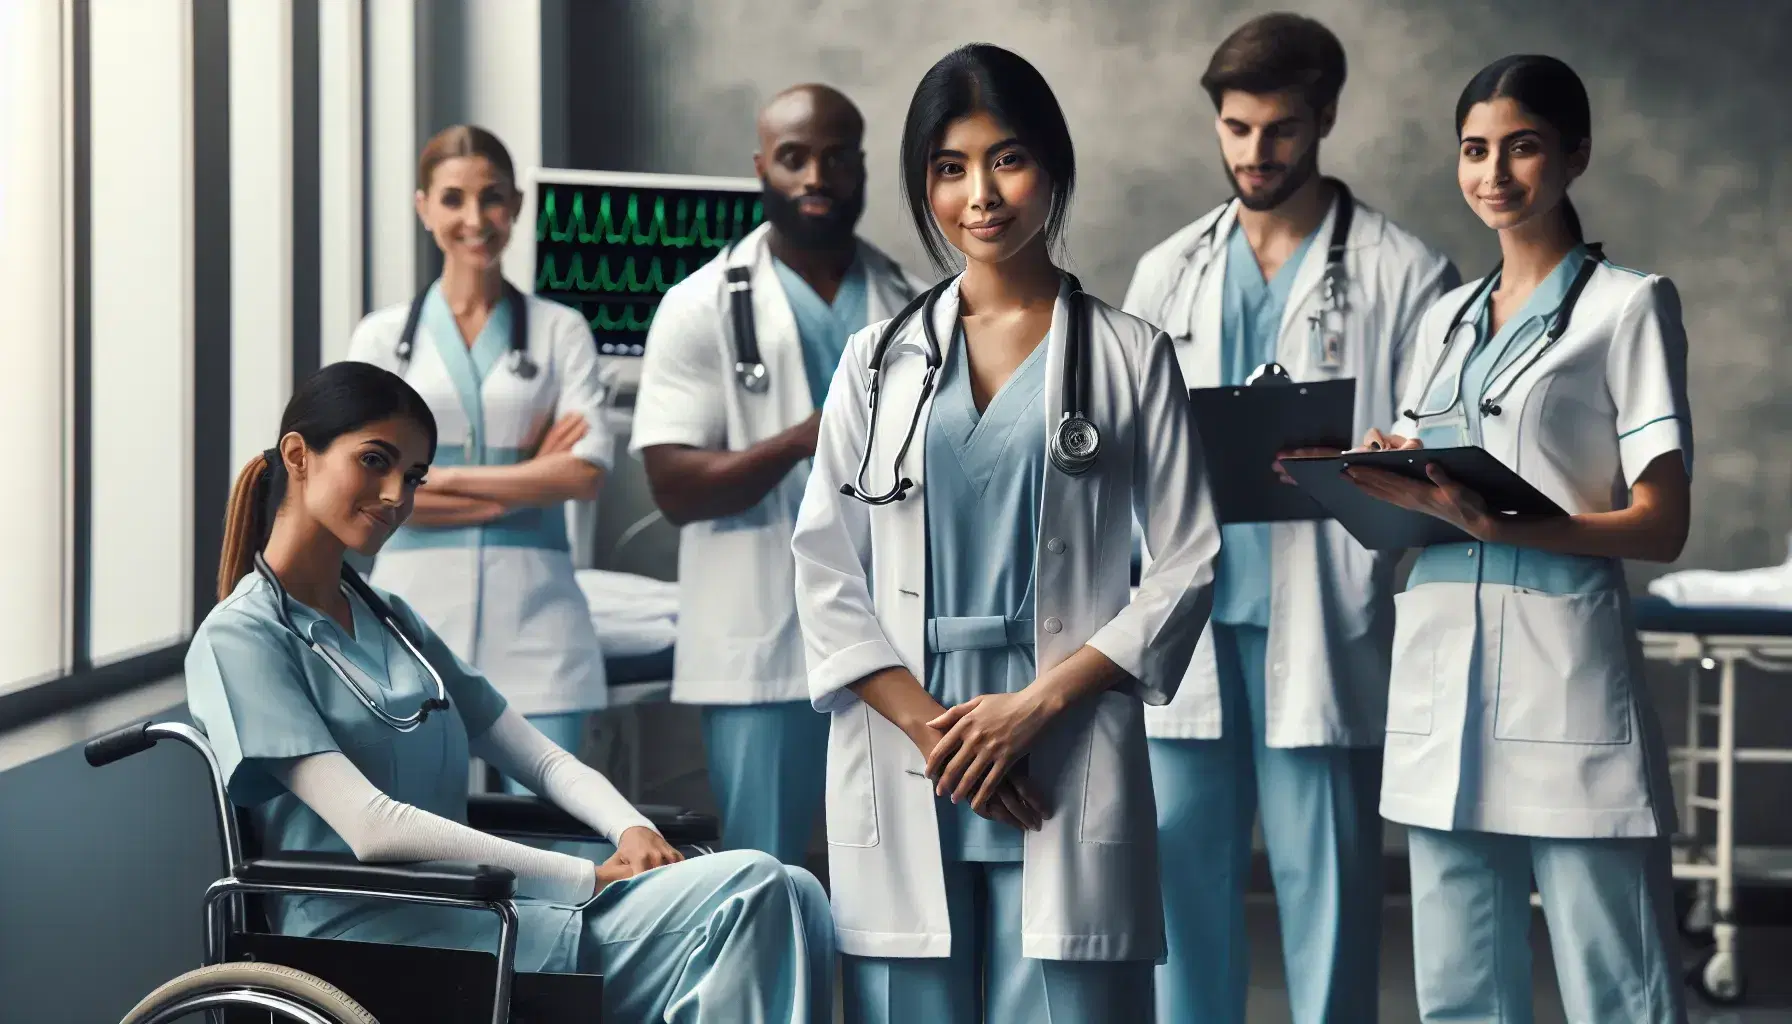 Grupo diverso de enfermeros profesionales colaborando en un hospital, con una enfermera de origen surasiático sonriendo al centro.